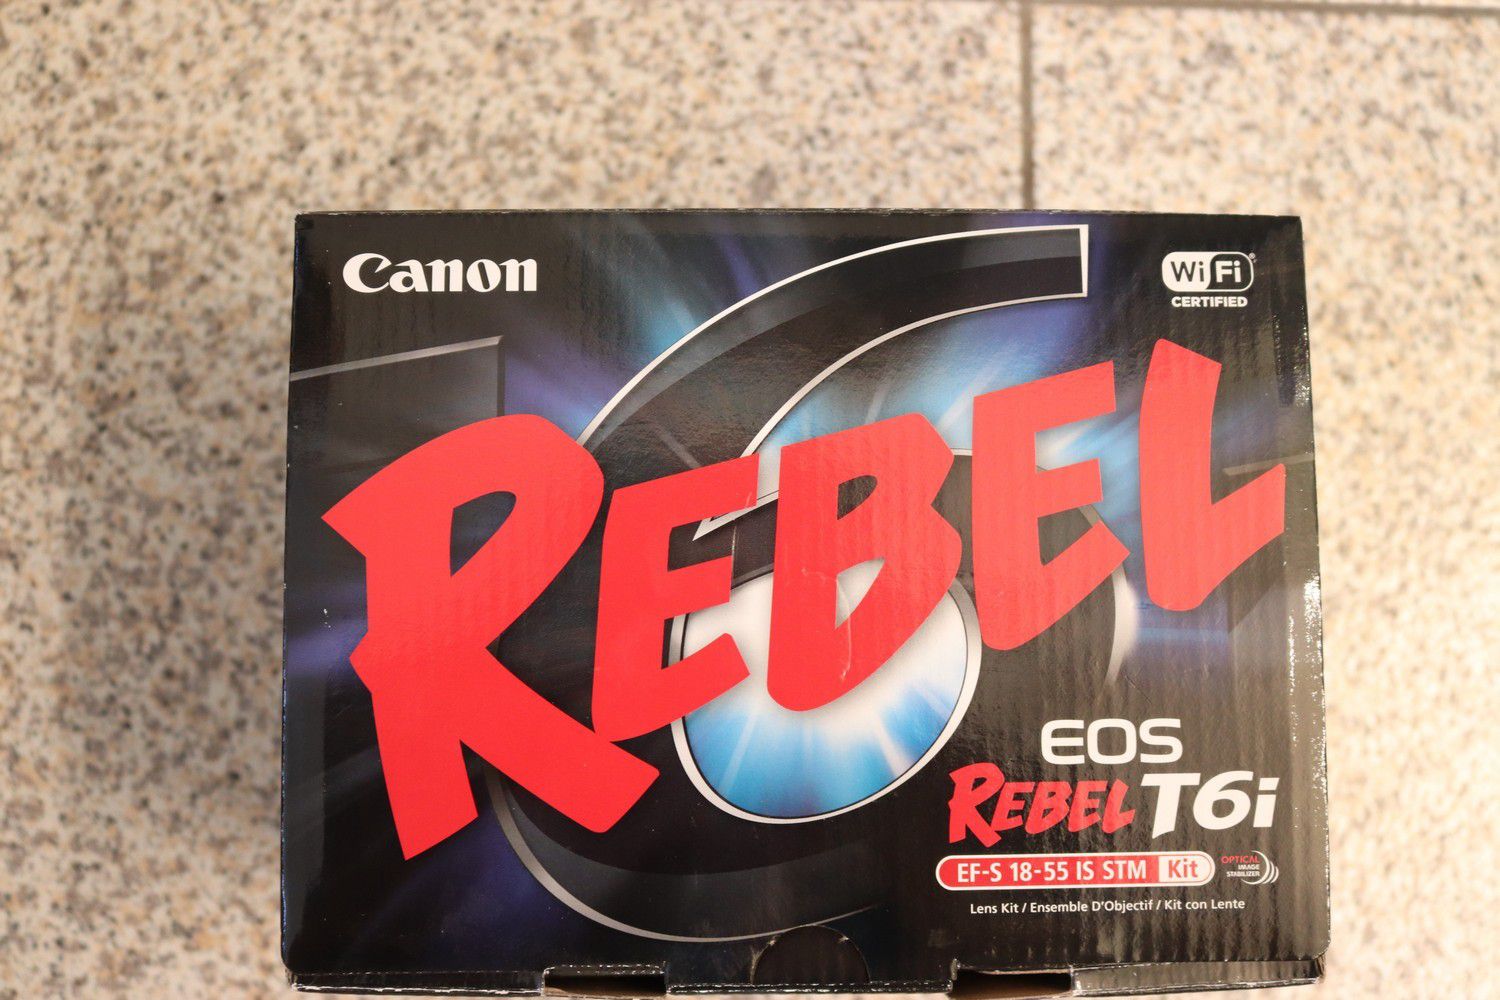 LIKE NEW Canon Rebel t6i w/accessories